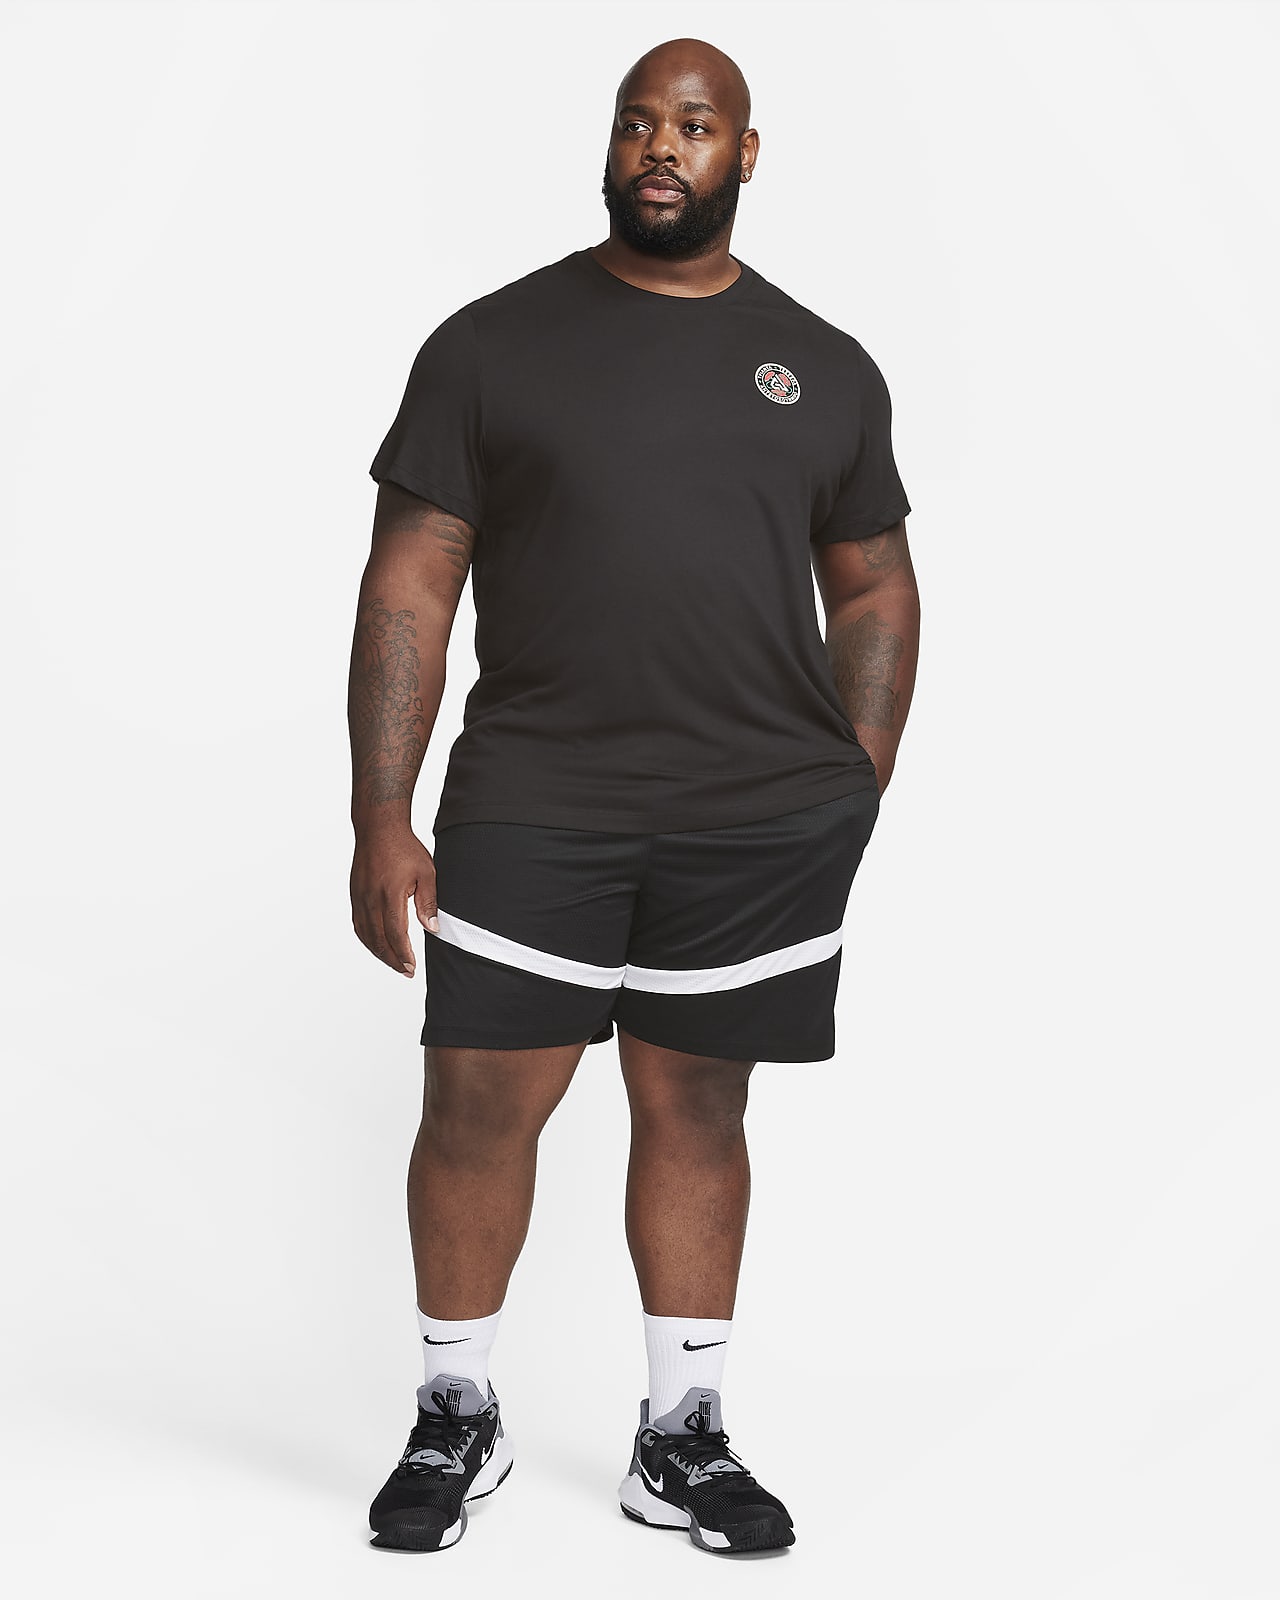 Nike Freak Tshirt  Giannis Nike Dri-fit Basketball Tshirt, Men's